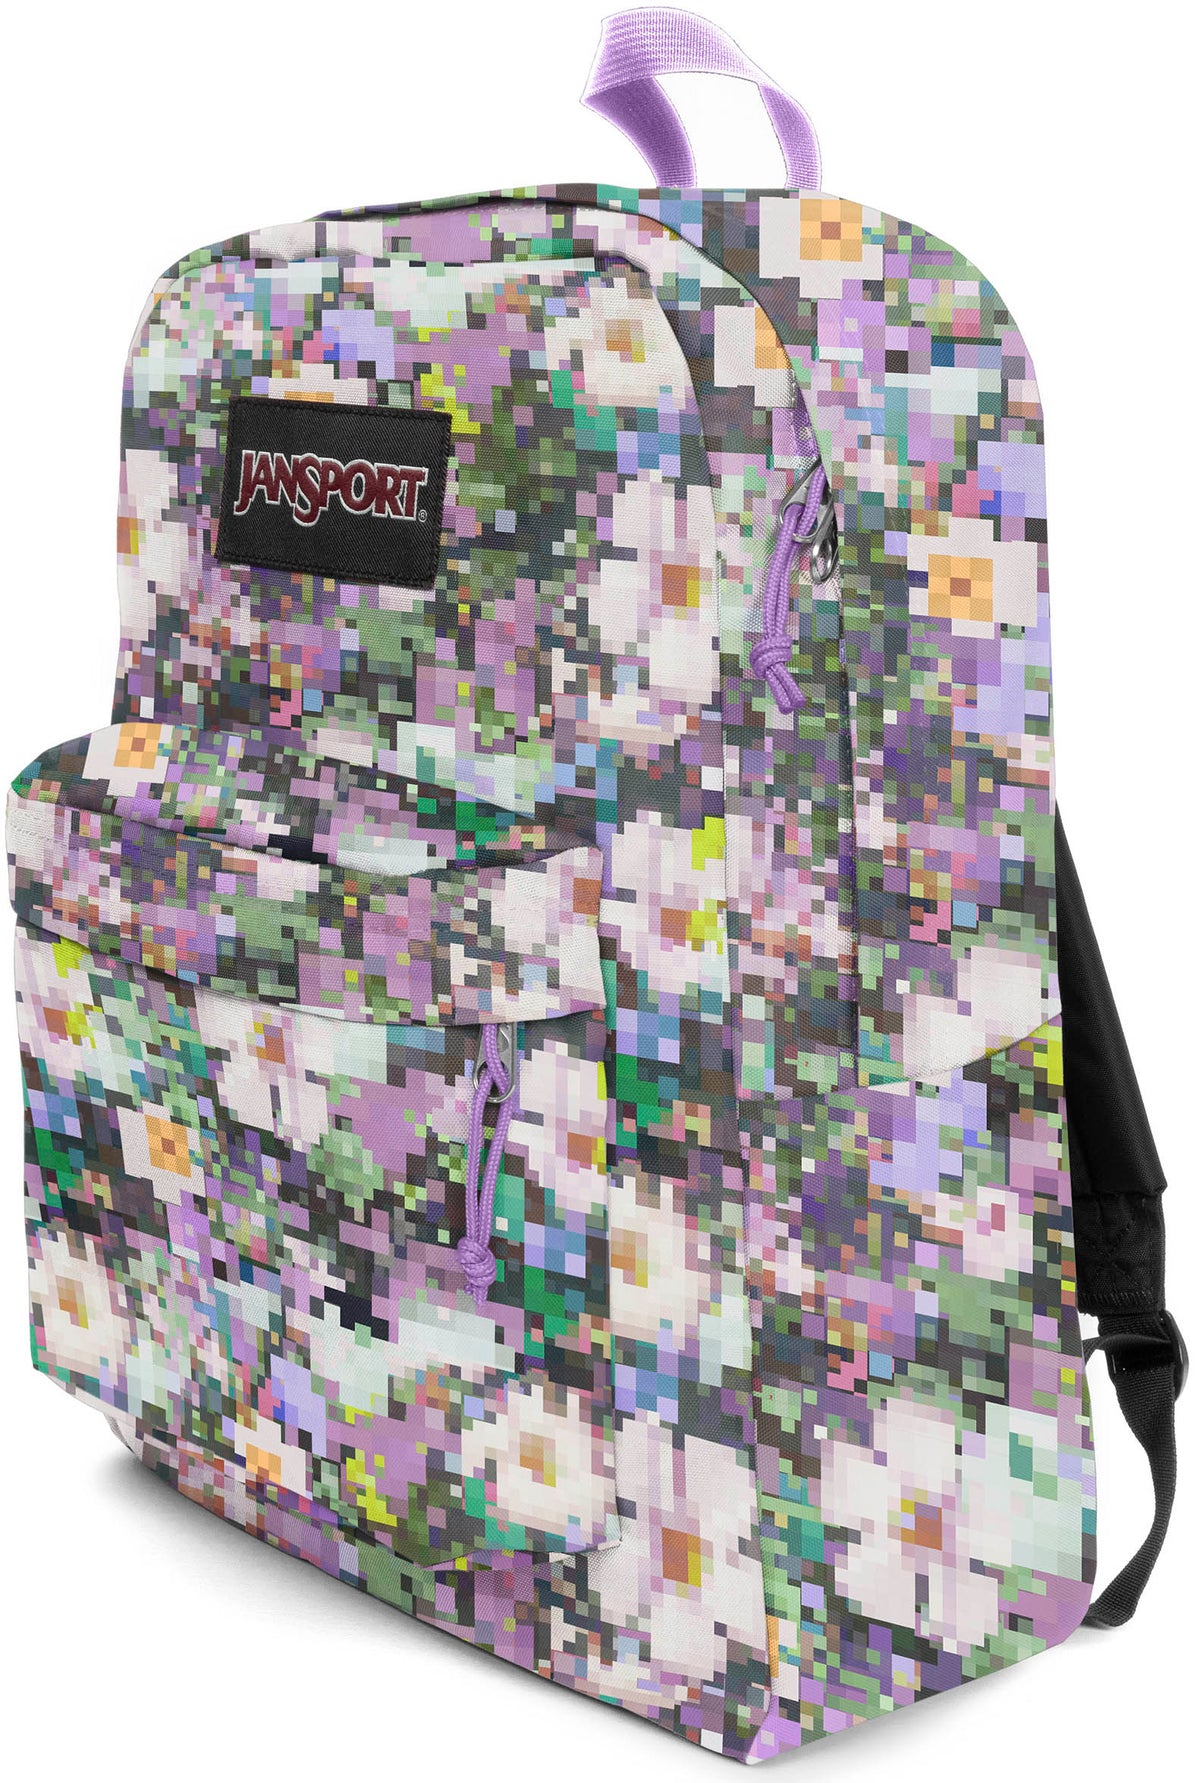 Jansport Superbreak Plus Backpack - 8 Bit Floral